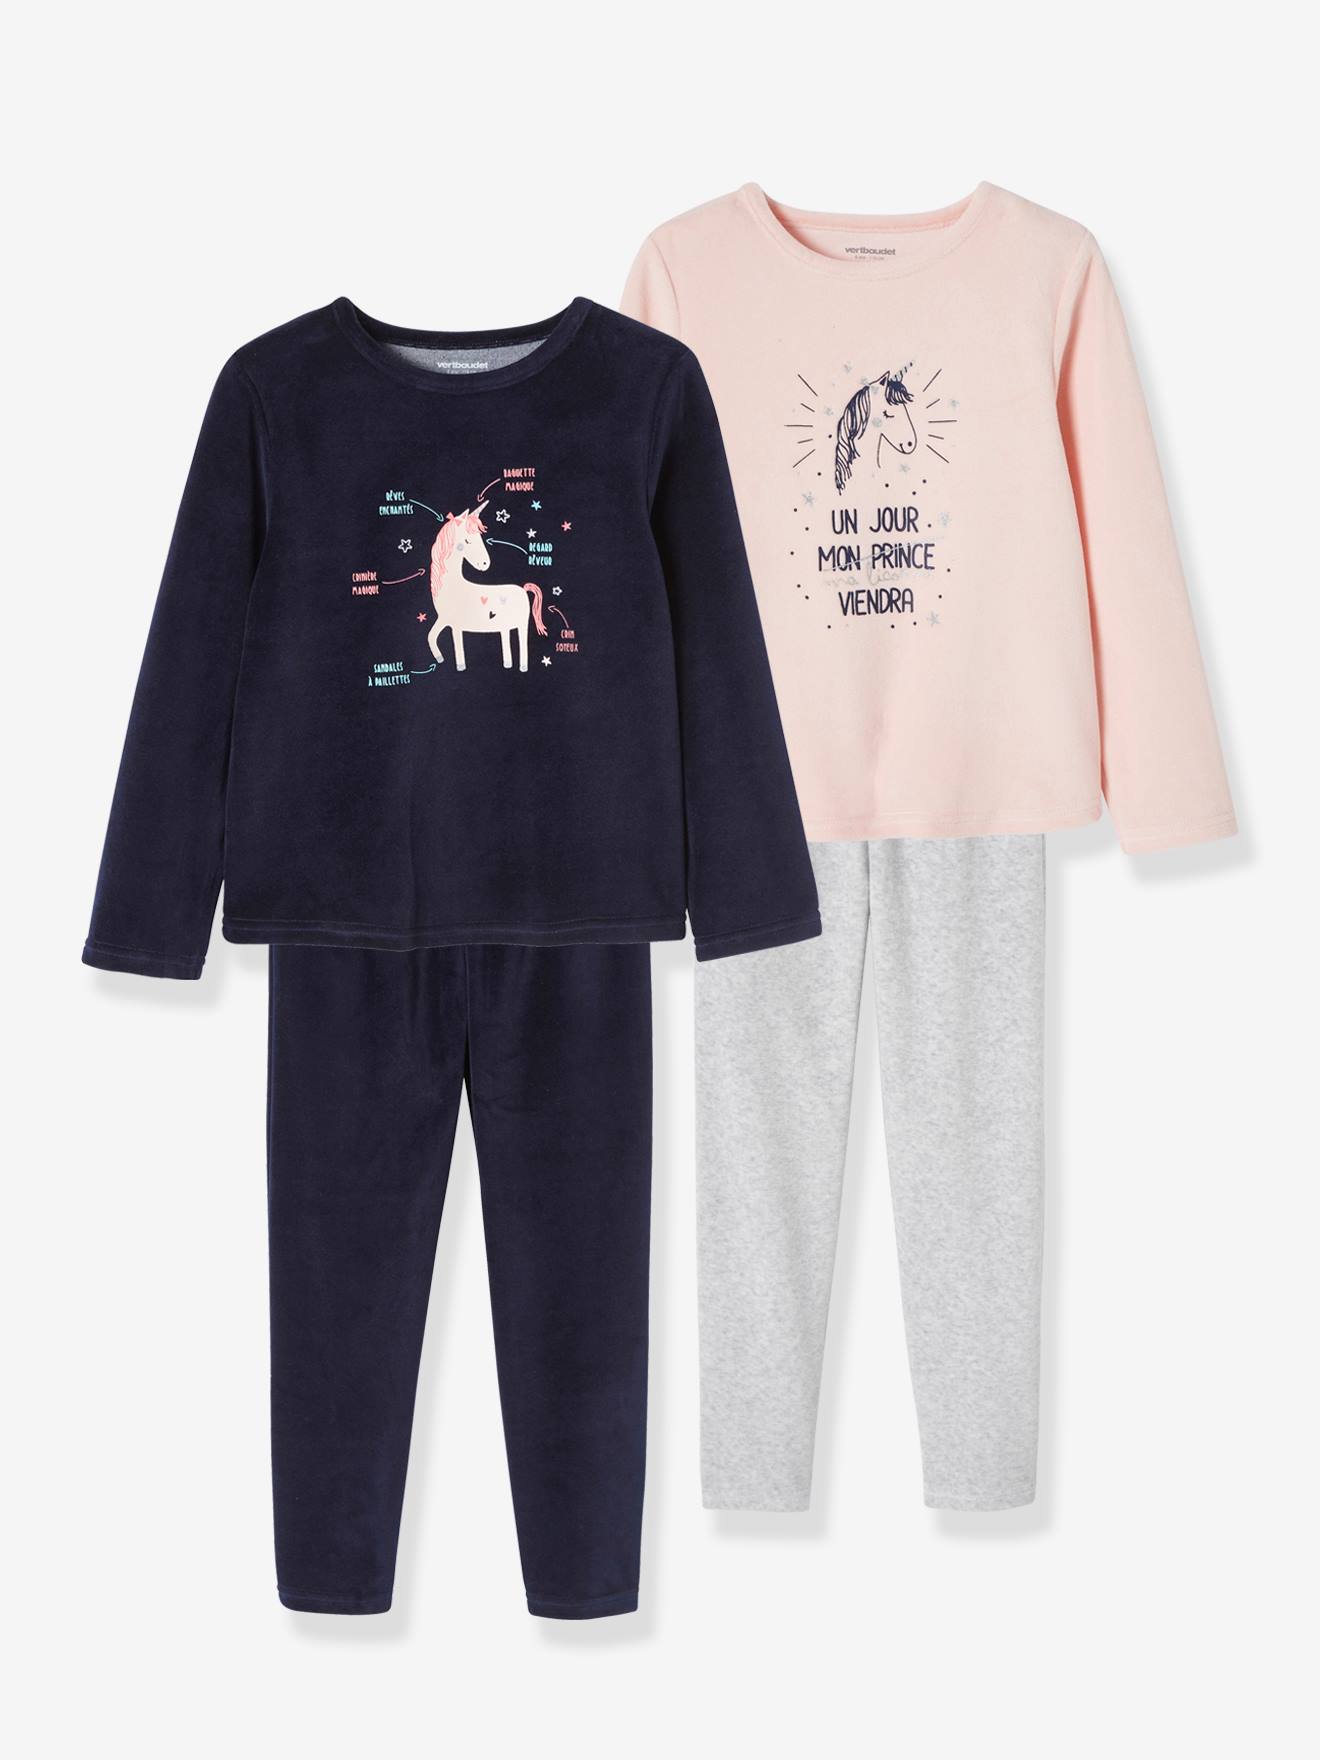 Pack of 2 "Unicorn" Velour Pyjamas for Girls light pink